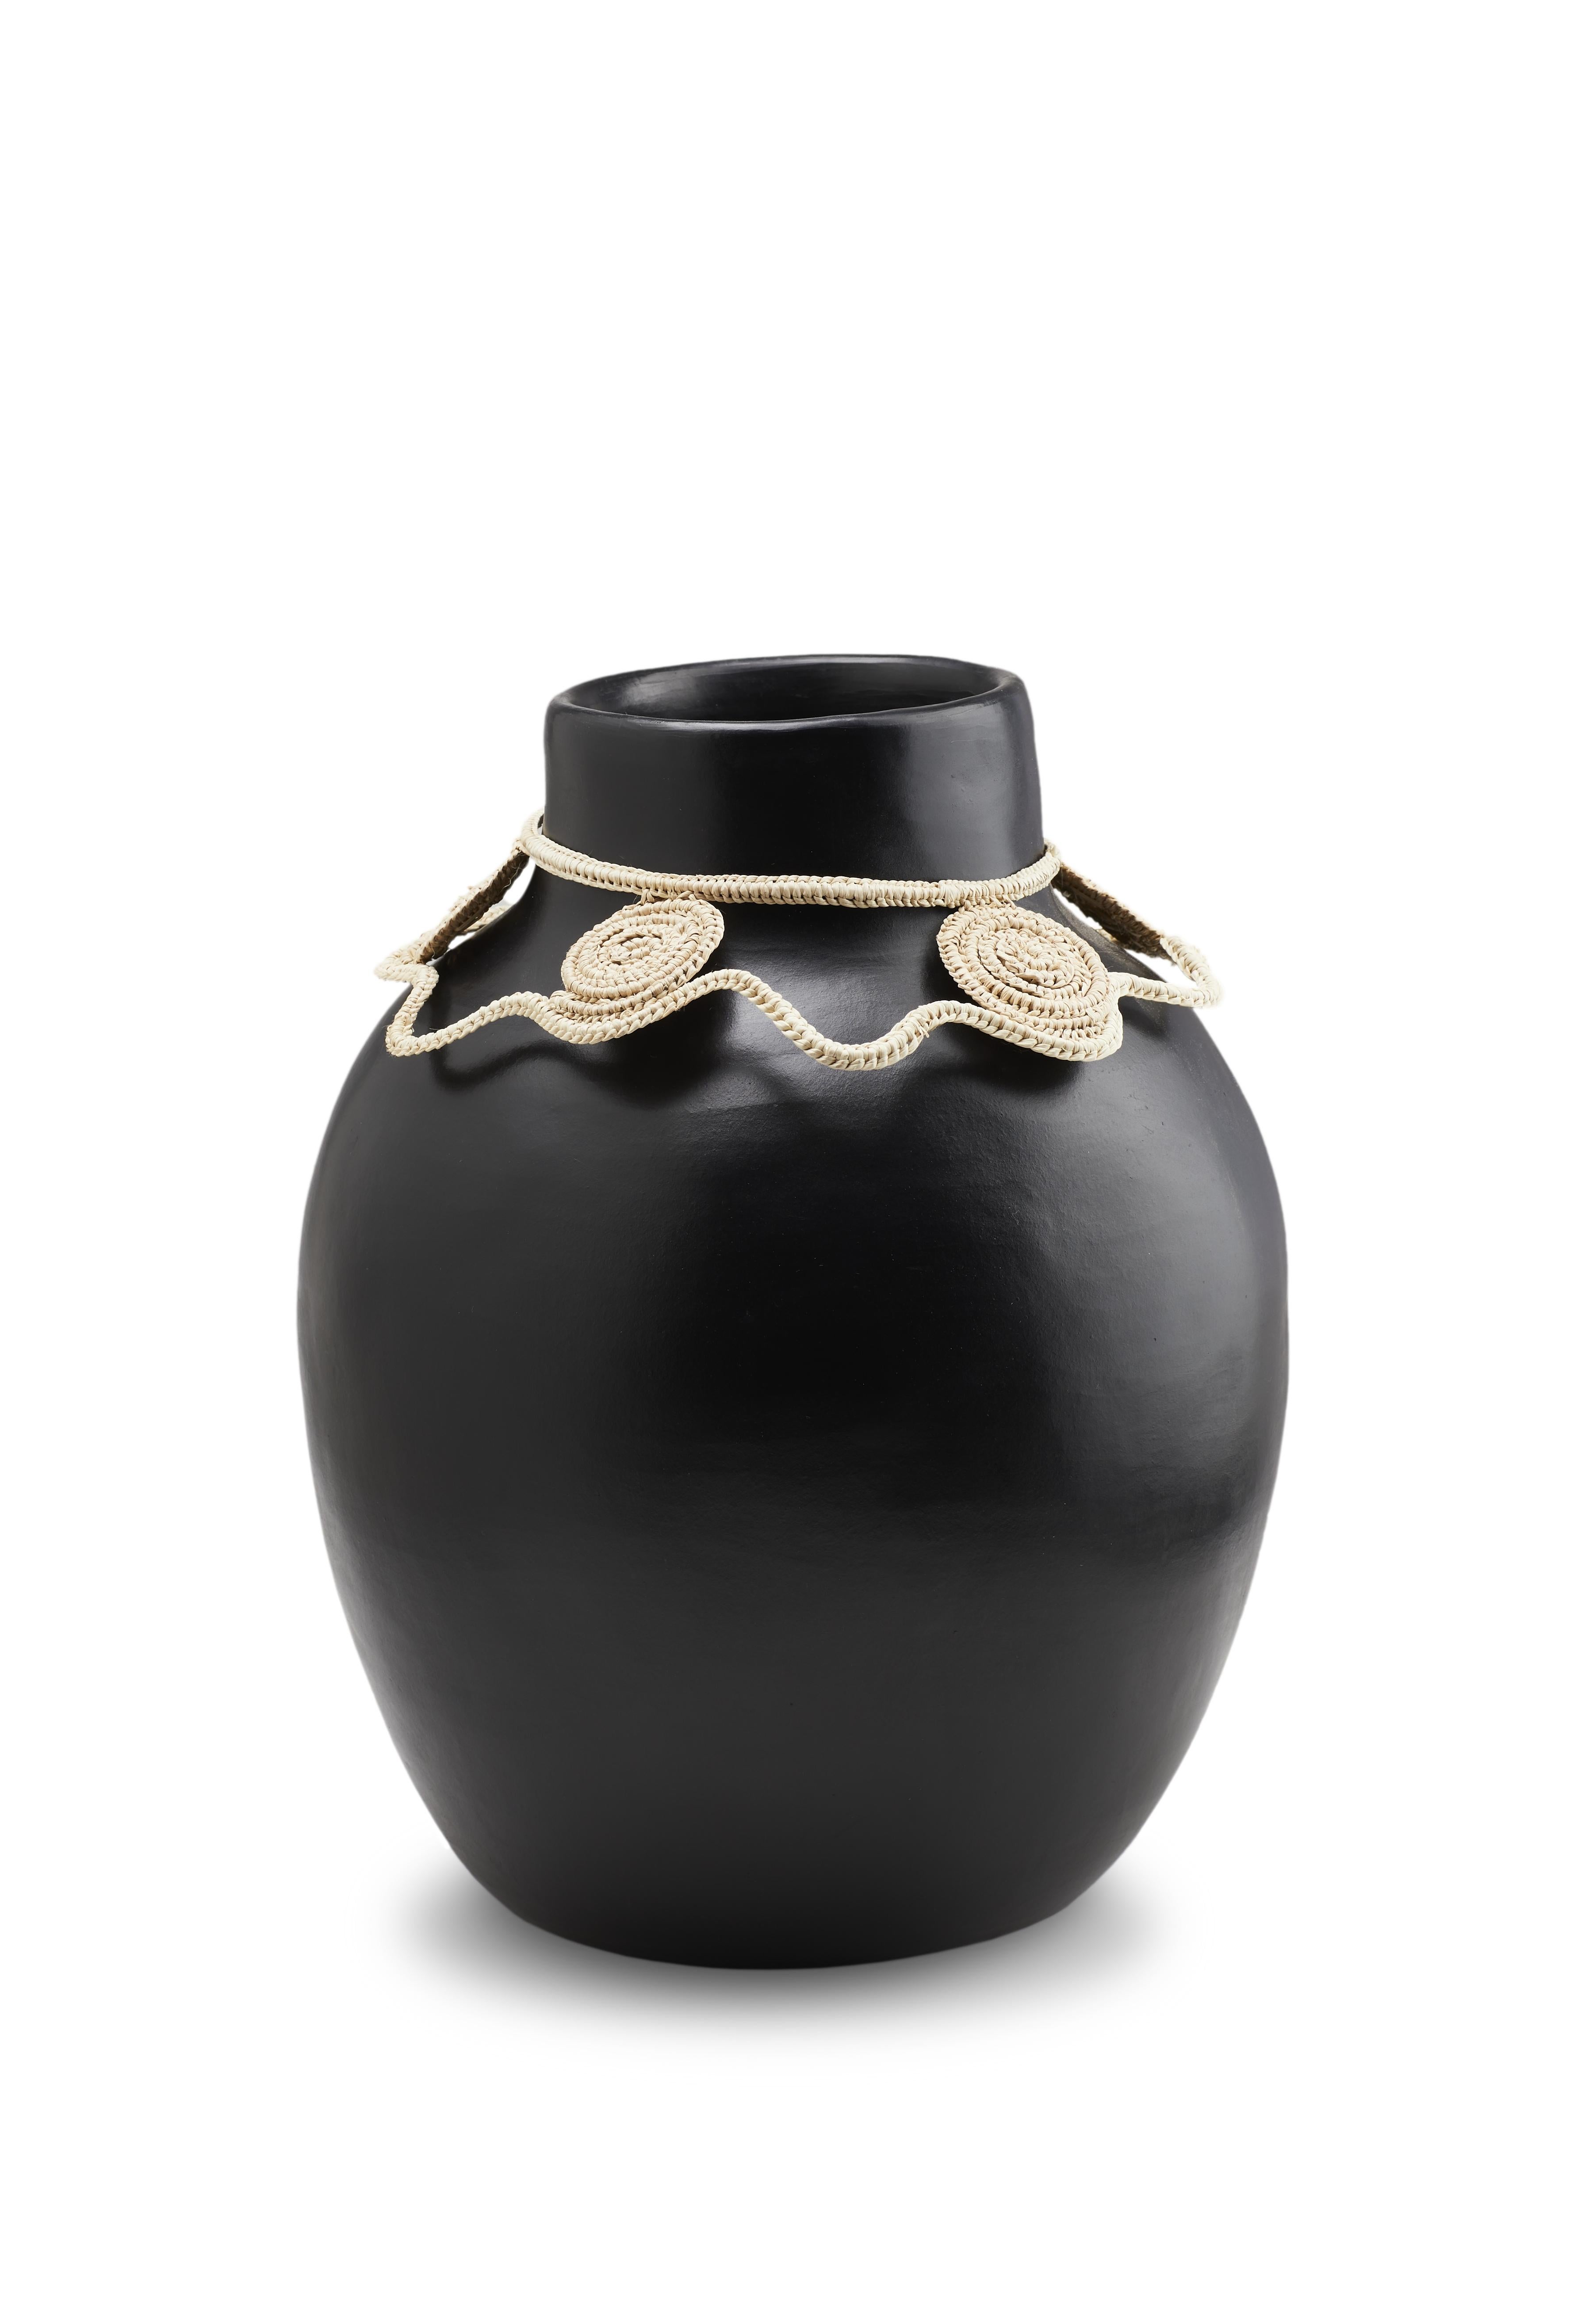 Vase, 2 Karat, von Cristina Celestino 
MATERIALIEN: Hitzebeständige schwarze Keramik. Fasern aus Jipi-Palmblättern Fasern
Technik: Glasiert. Im Ofen gegart und mit Halbedelsteinen poliert. Handgewebt. 
Abmessungen: Durchmesser 20 cm x H 30 cm